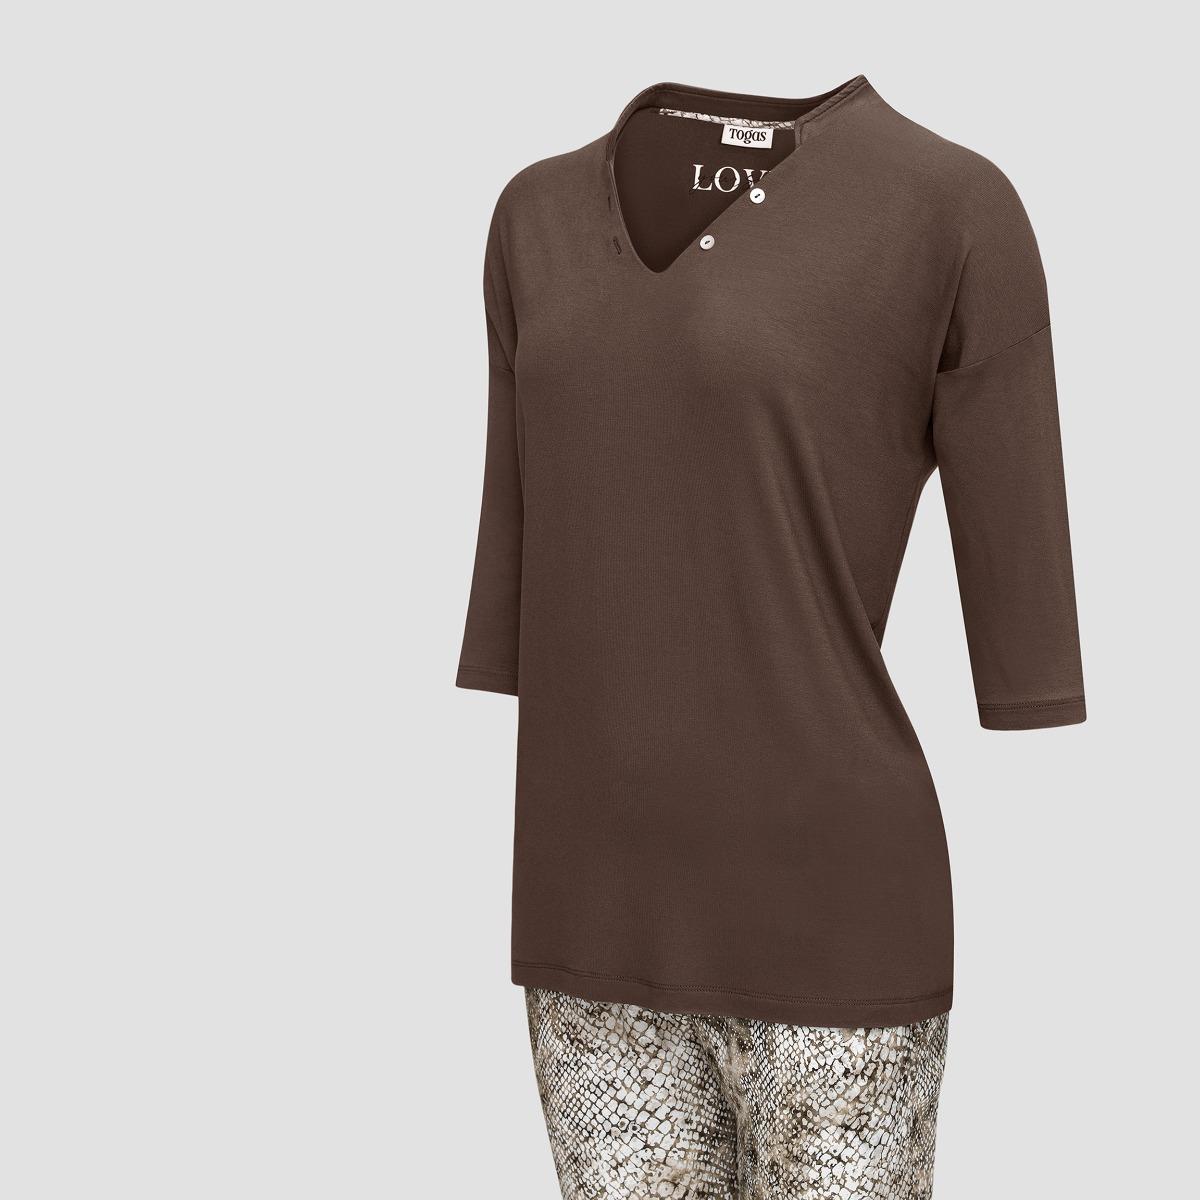 Пижама Togas Селиса коричневая женская s(44), цвет коричневый, размер S (44) - фото 2